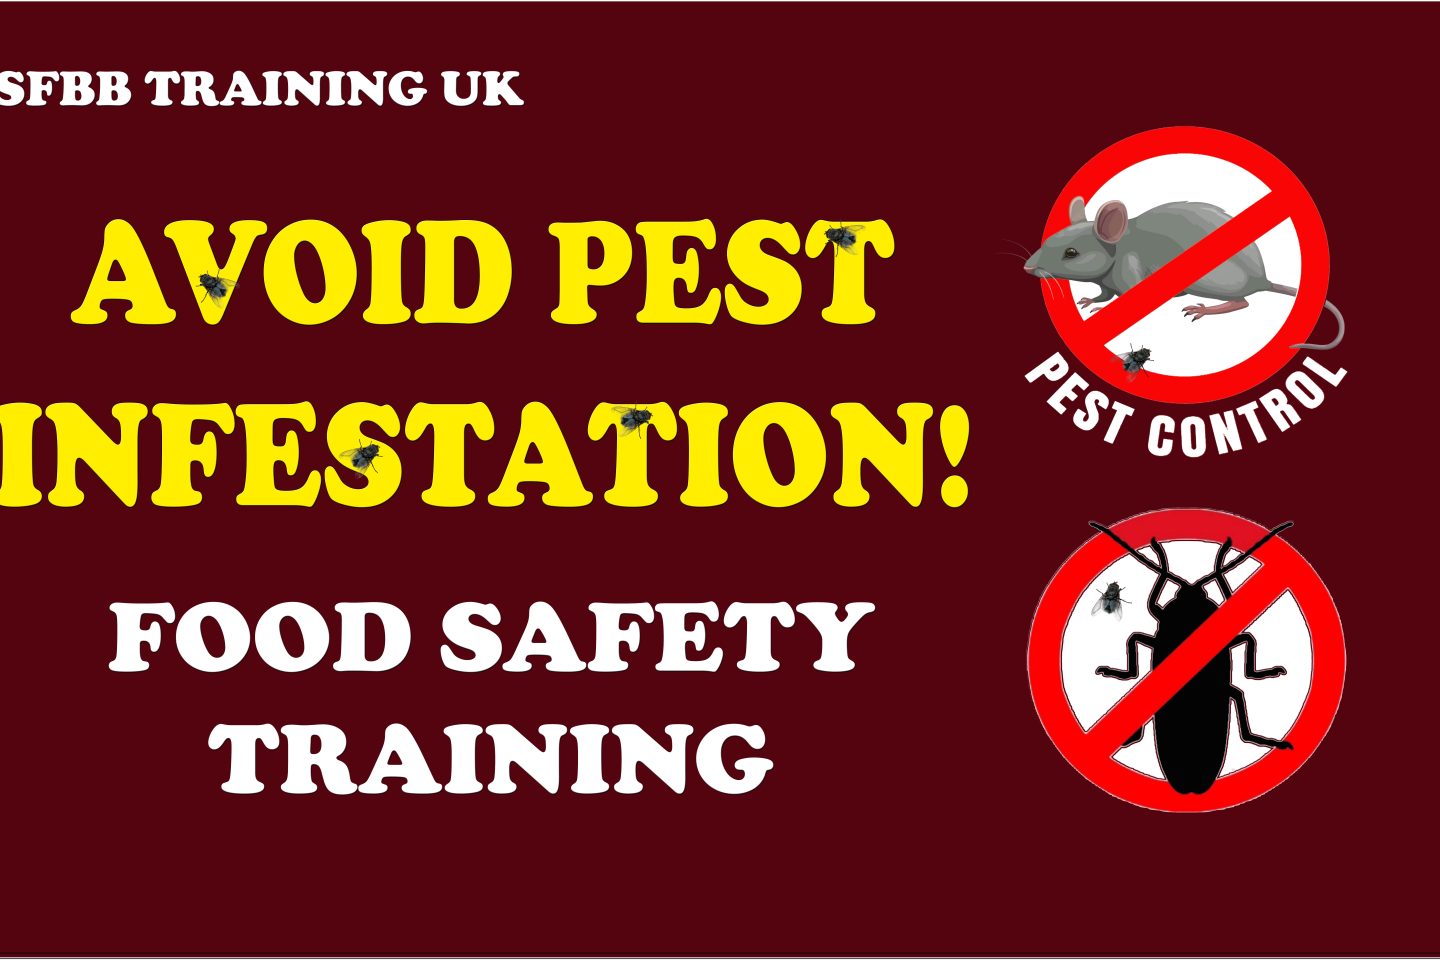 Food hygiene training, SFBB training, Pest Control